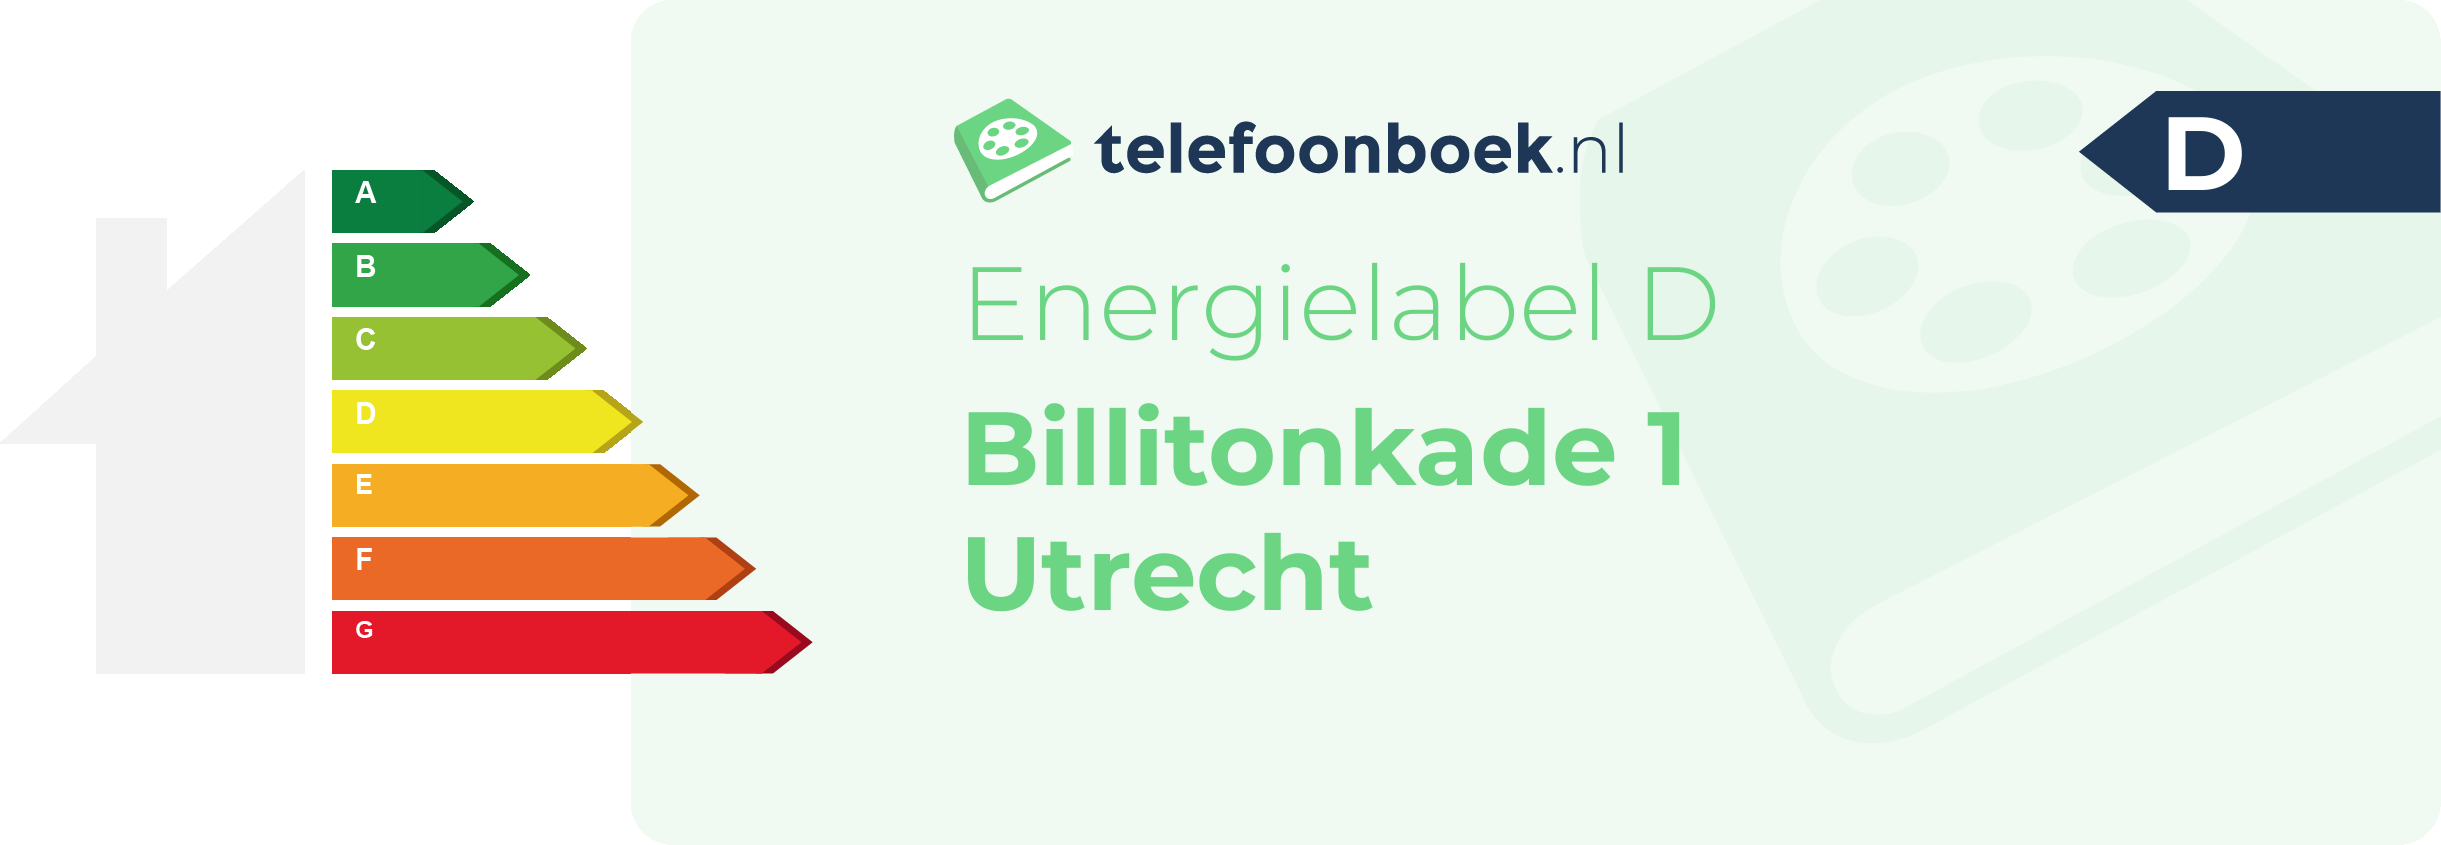 Energielabel Billitonkade 1 Utrecht